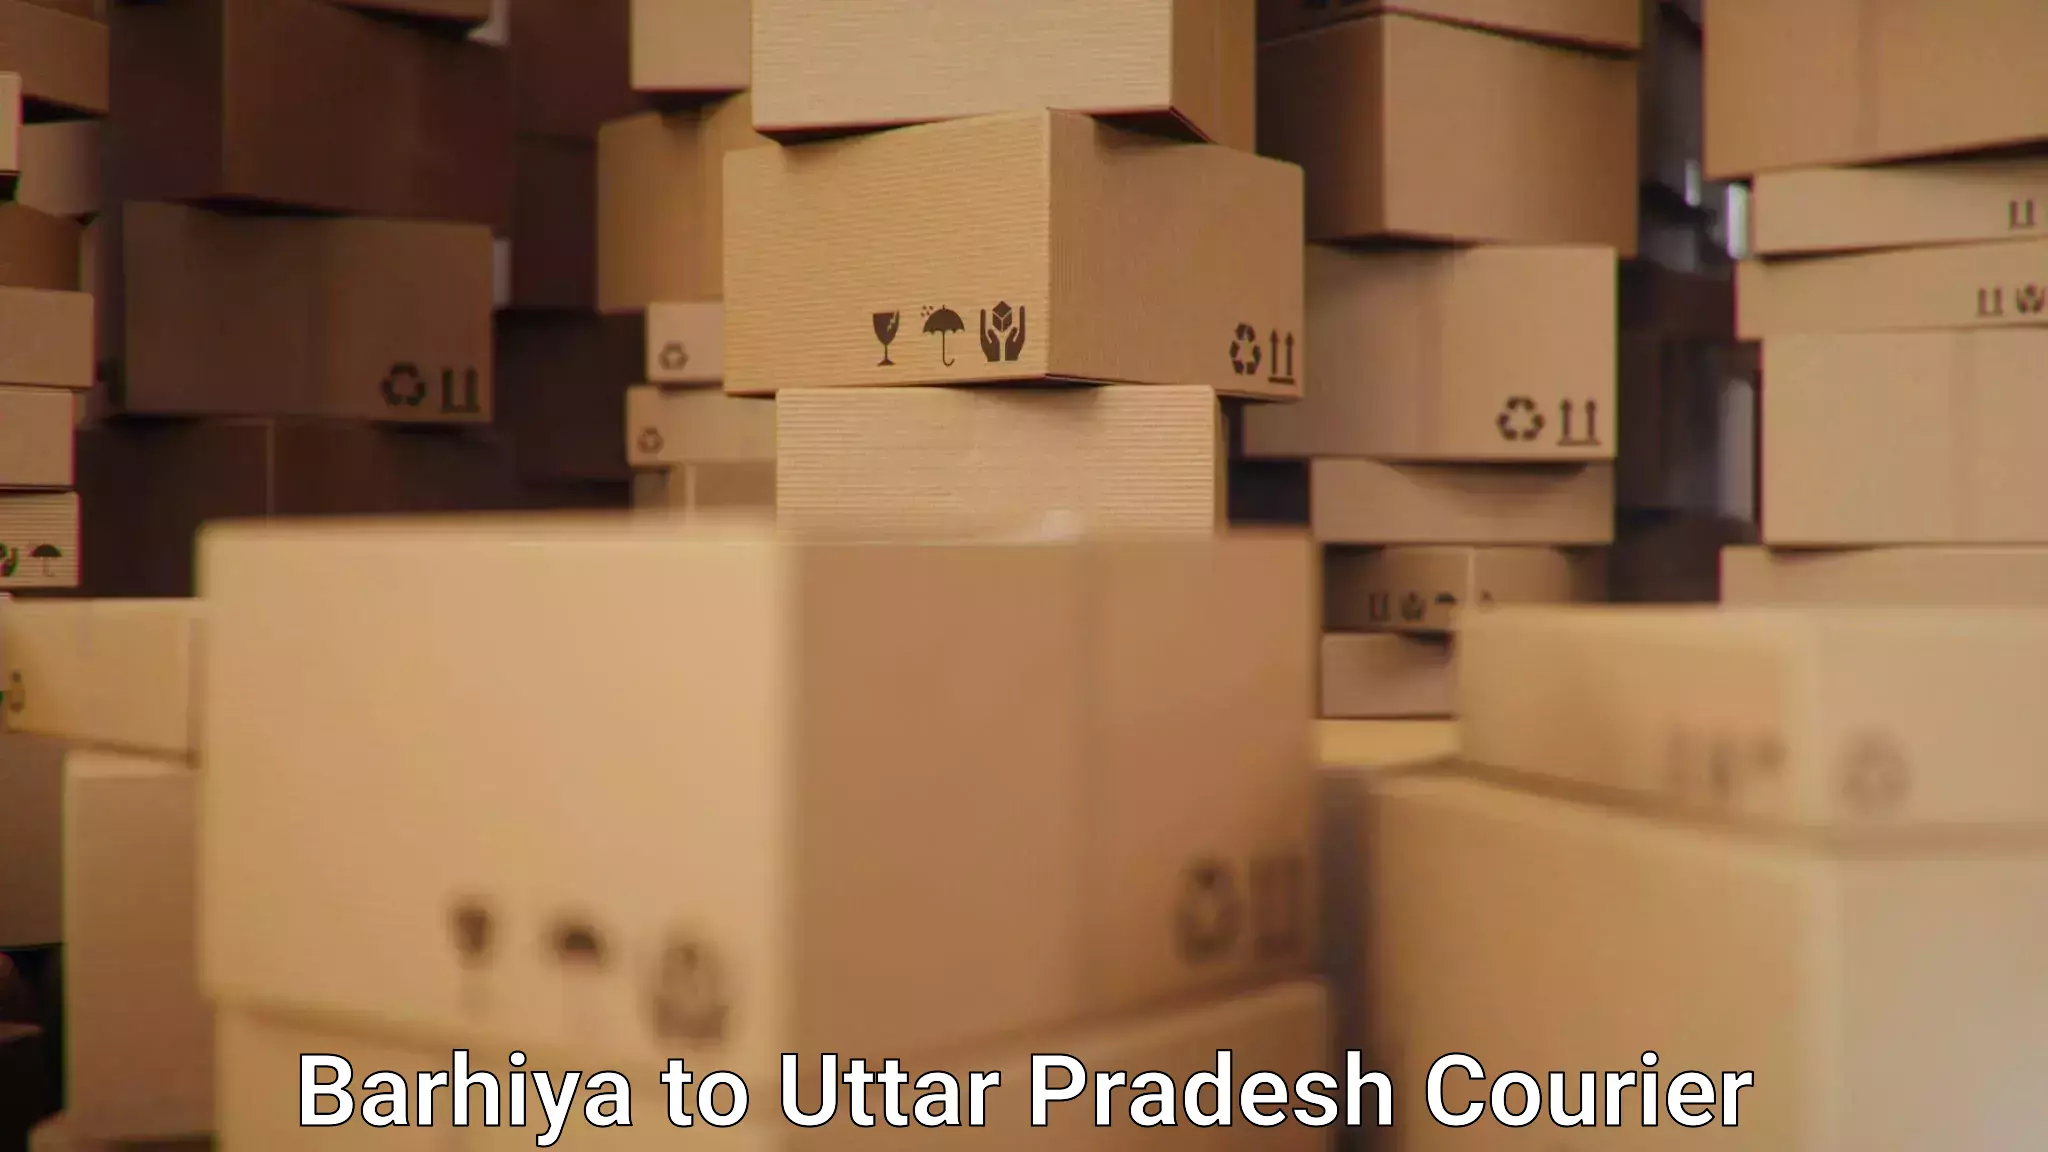 Cash on delivery service Barhiya to Uttar Pradesh